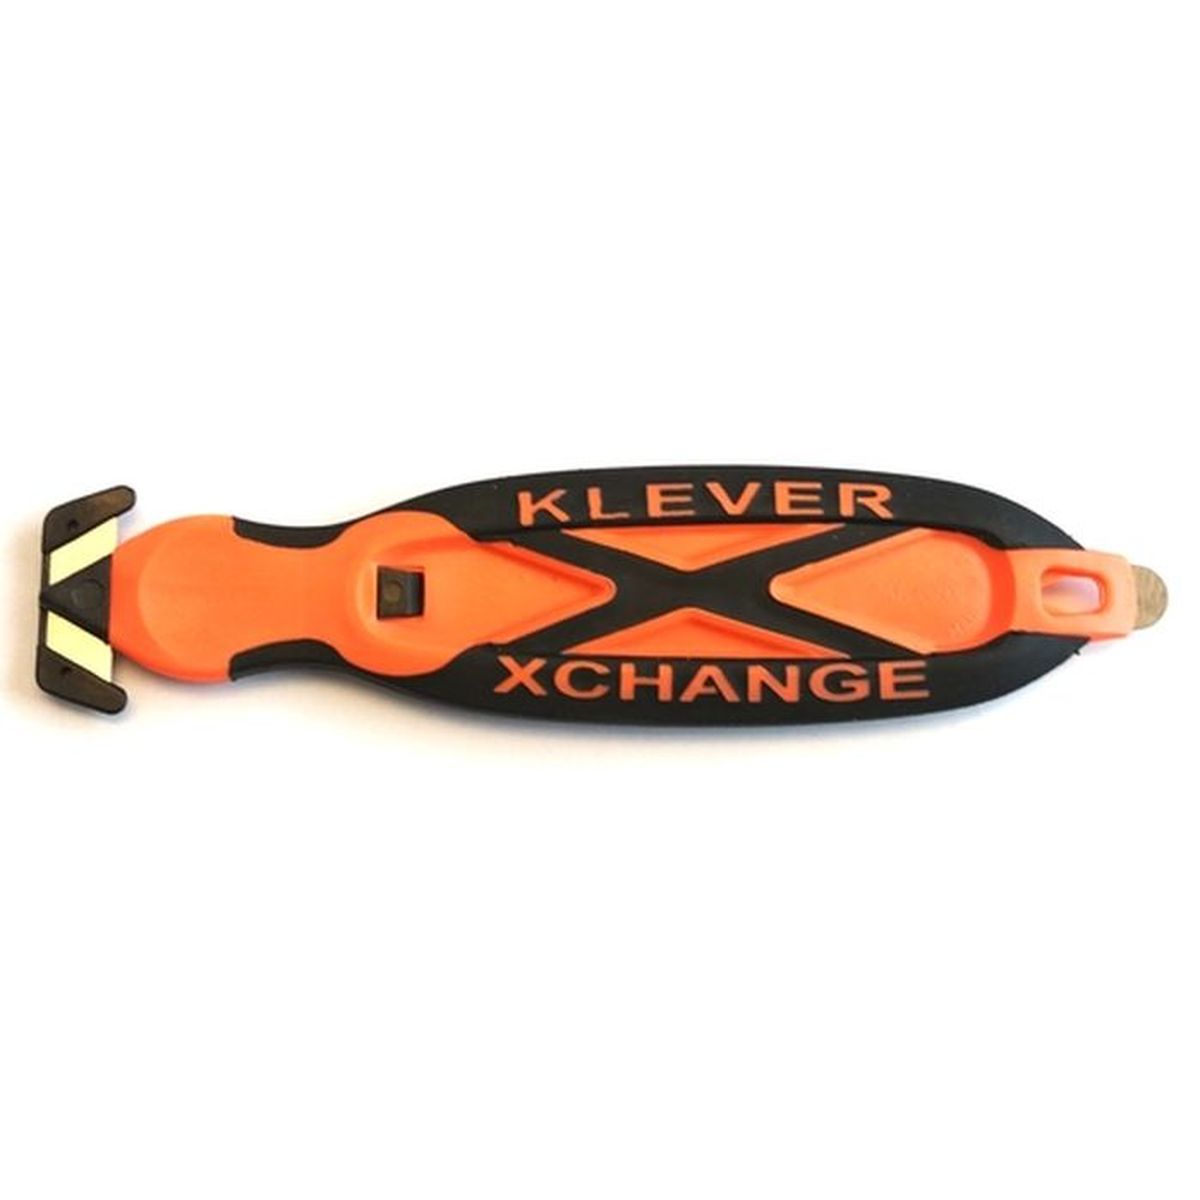 Safety Knife Klever Xchange 3007